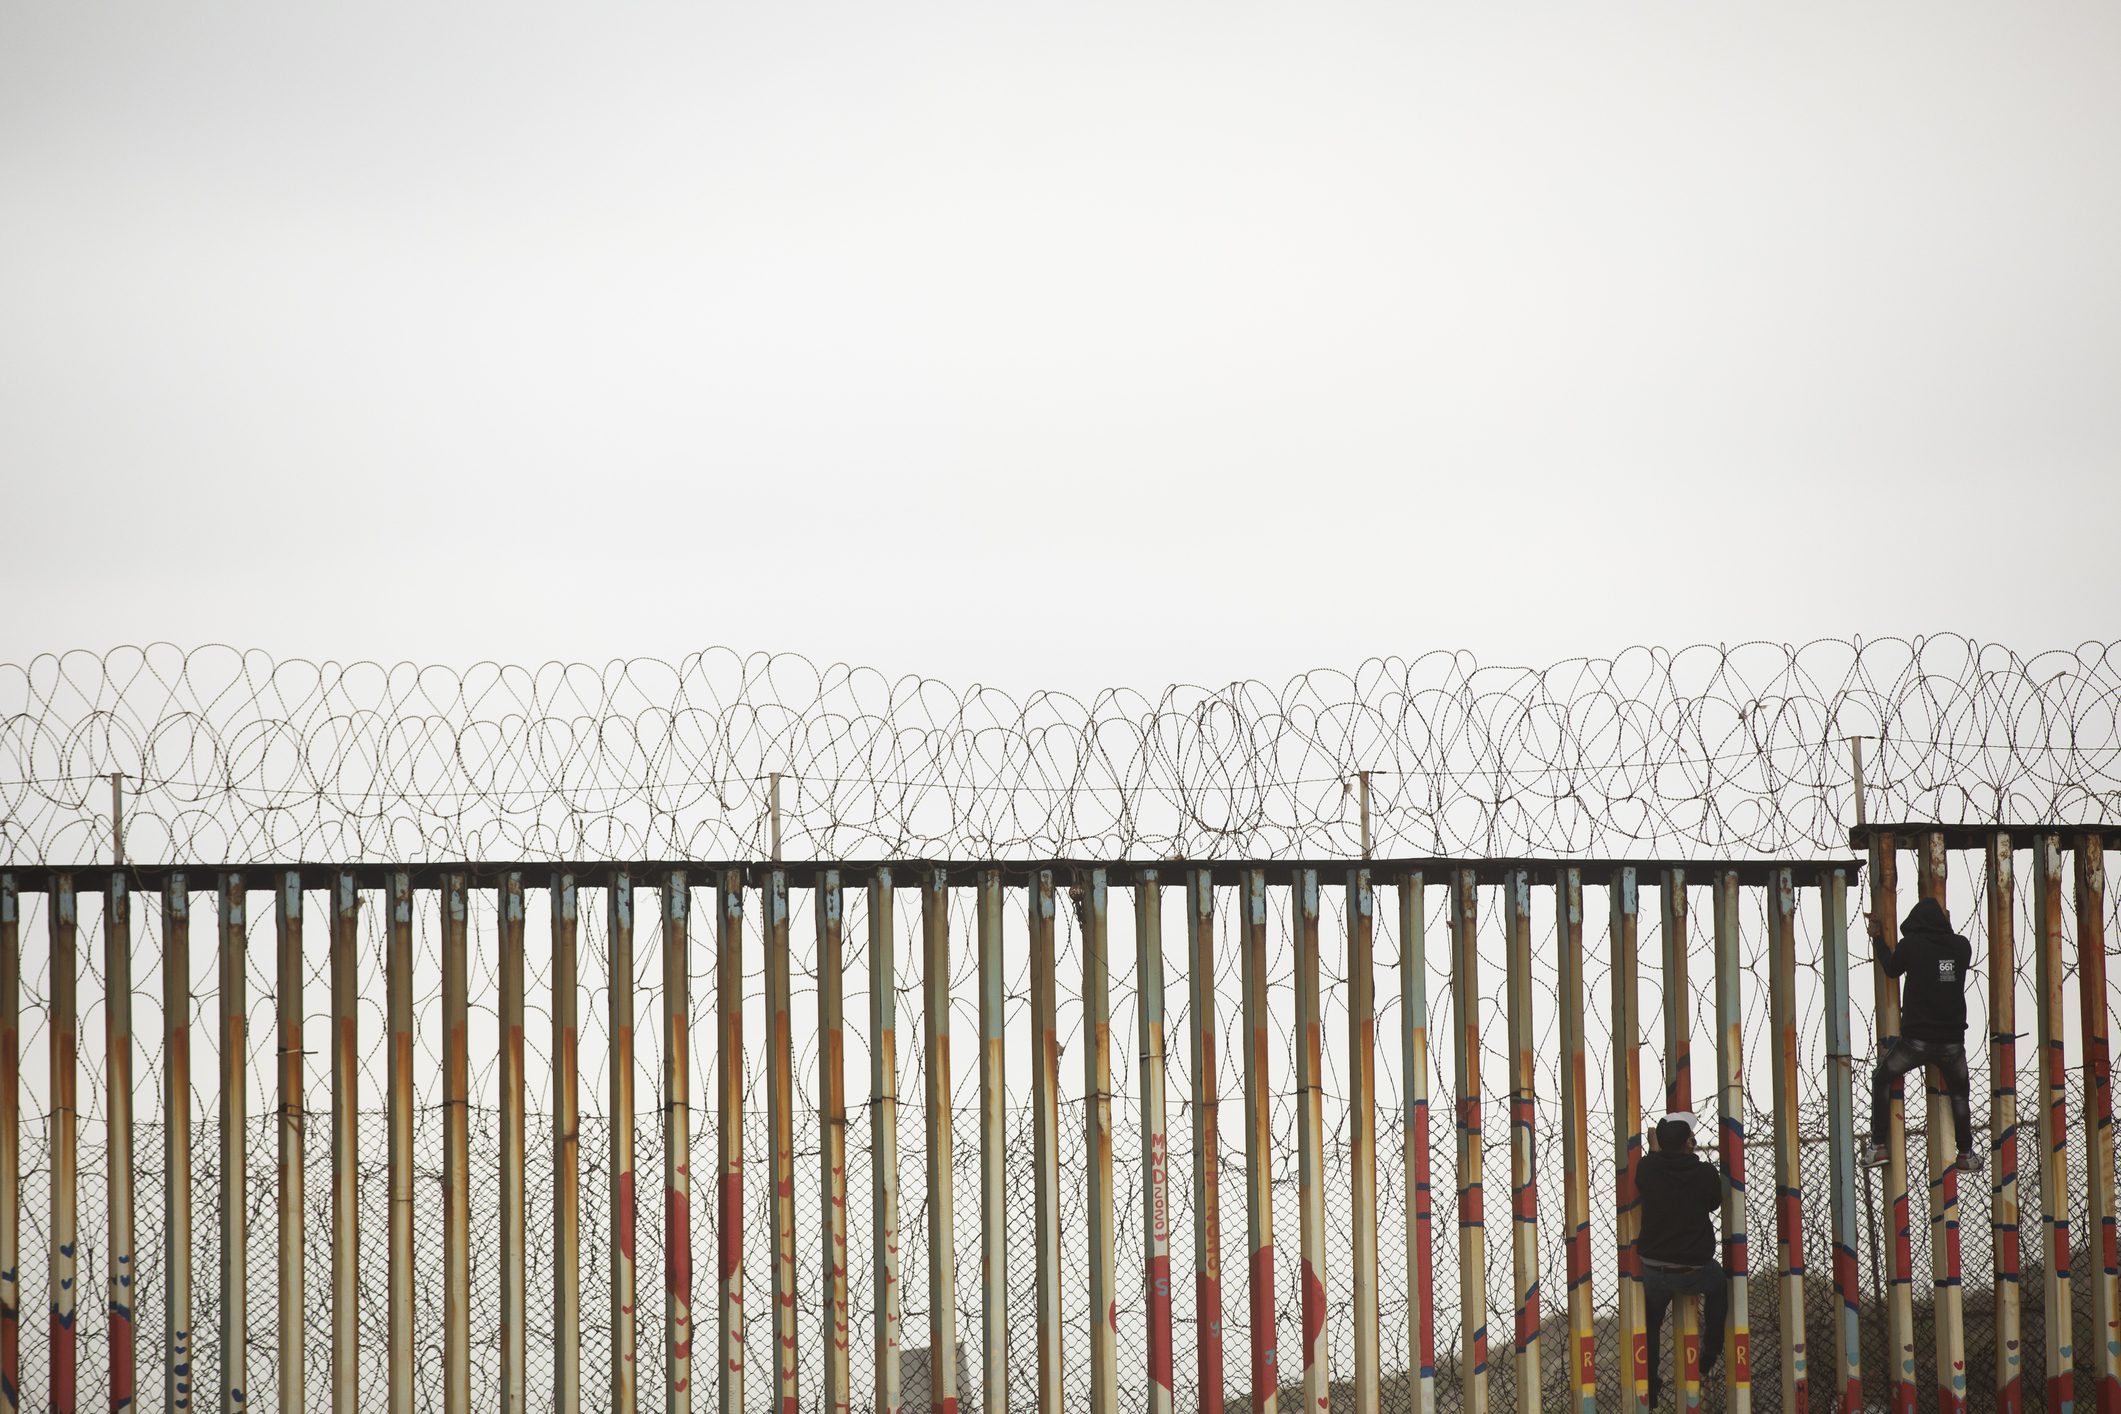 USA Mexico Border Wall